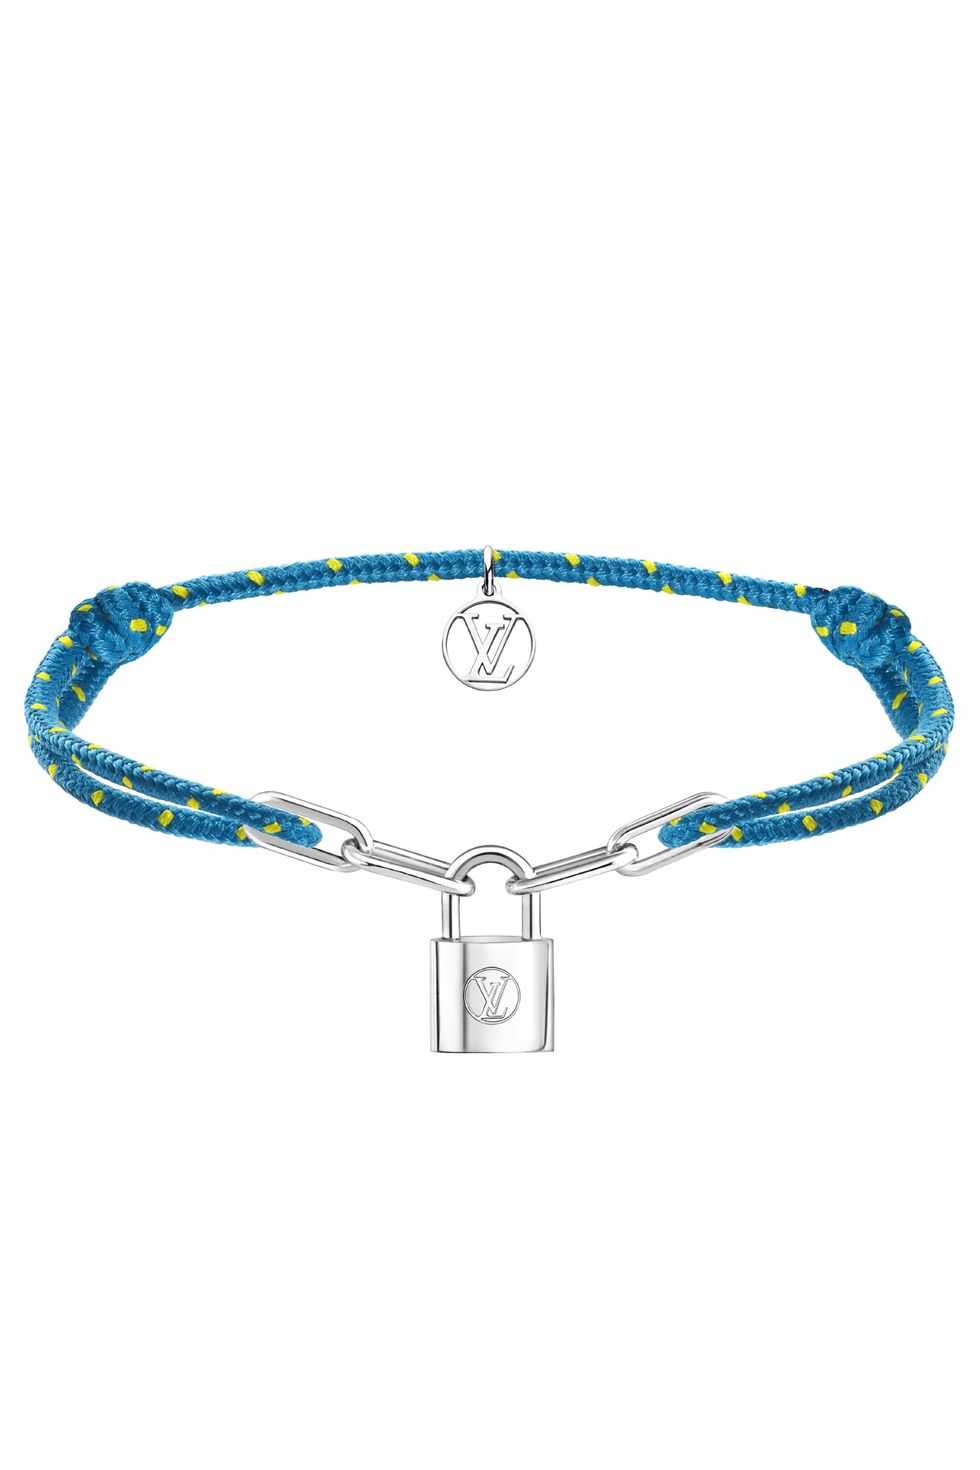 Louis Vuitton Blue Fashion Bracelets for sale